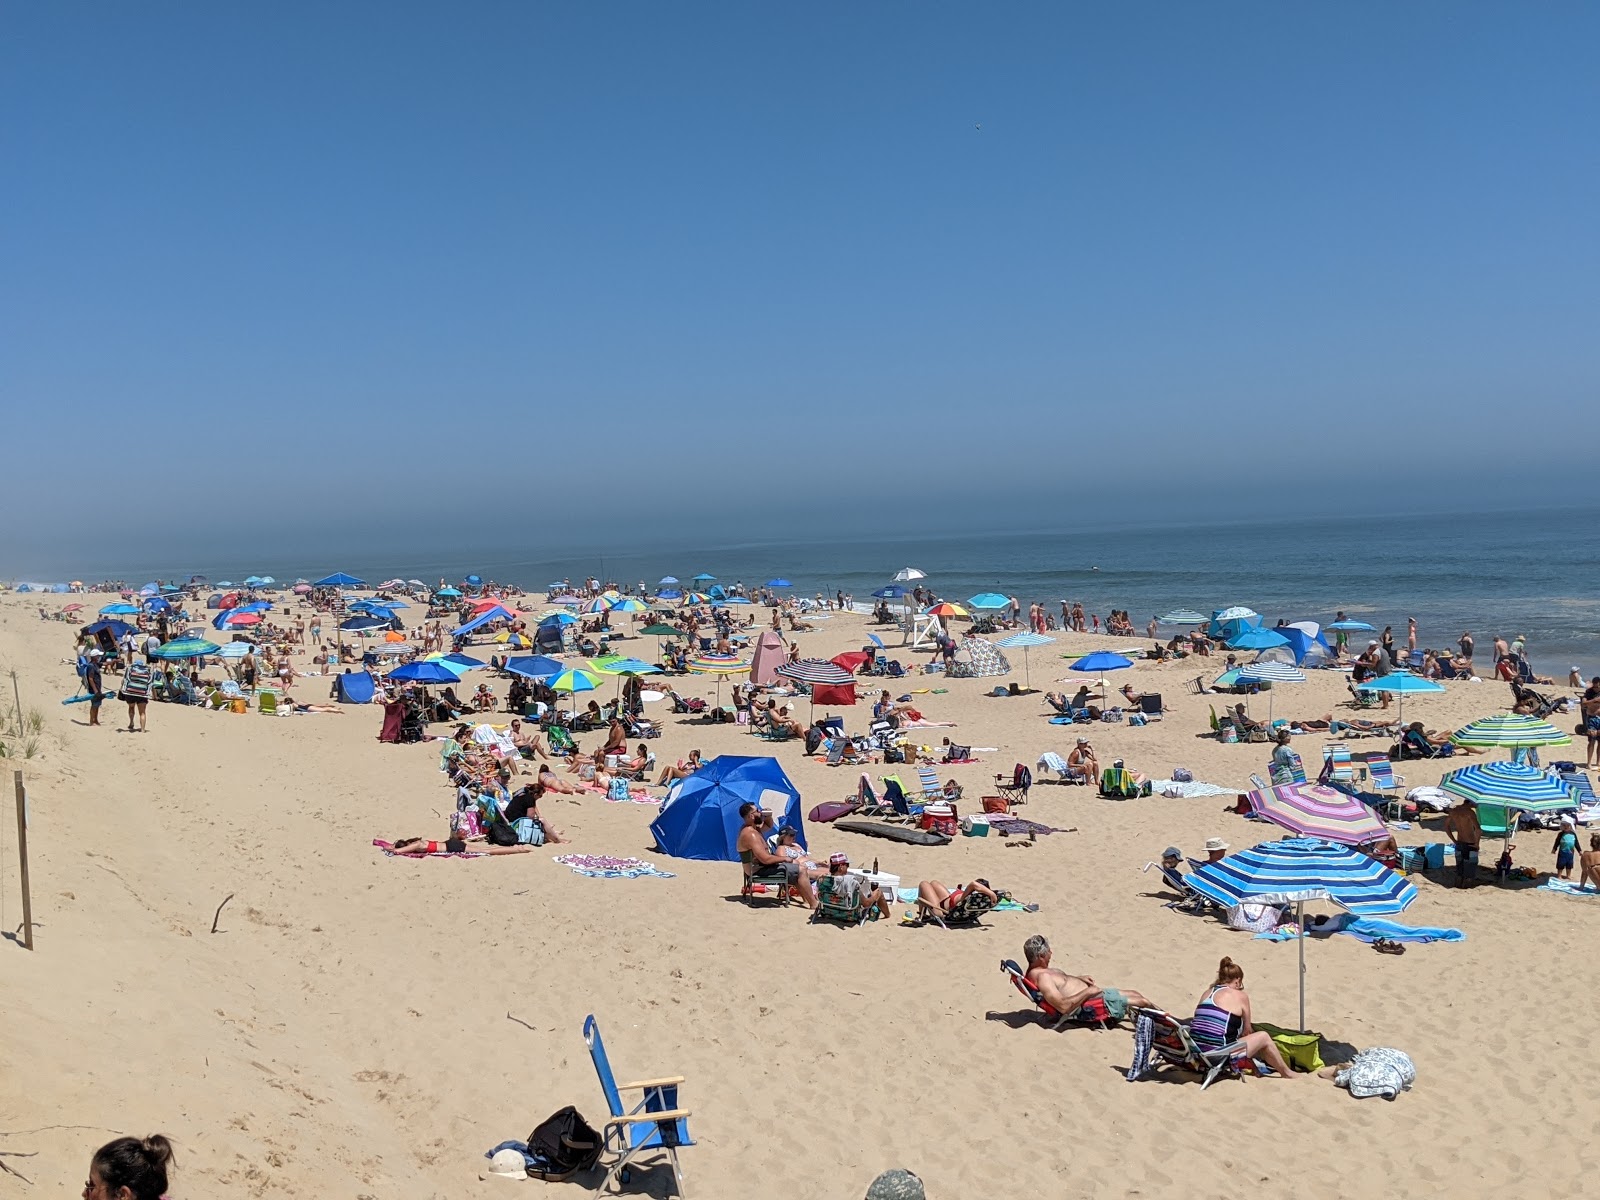 Fotografie cu Marconi beach - locul popular printre cunoscătorii de relaxare